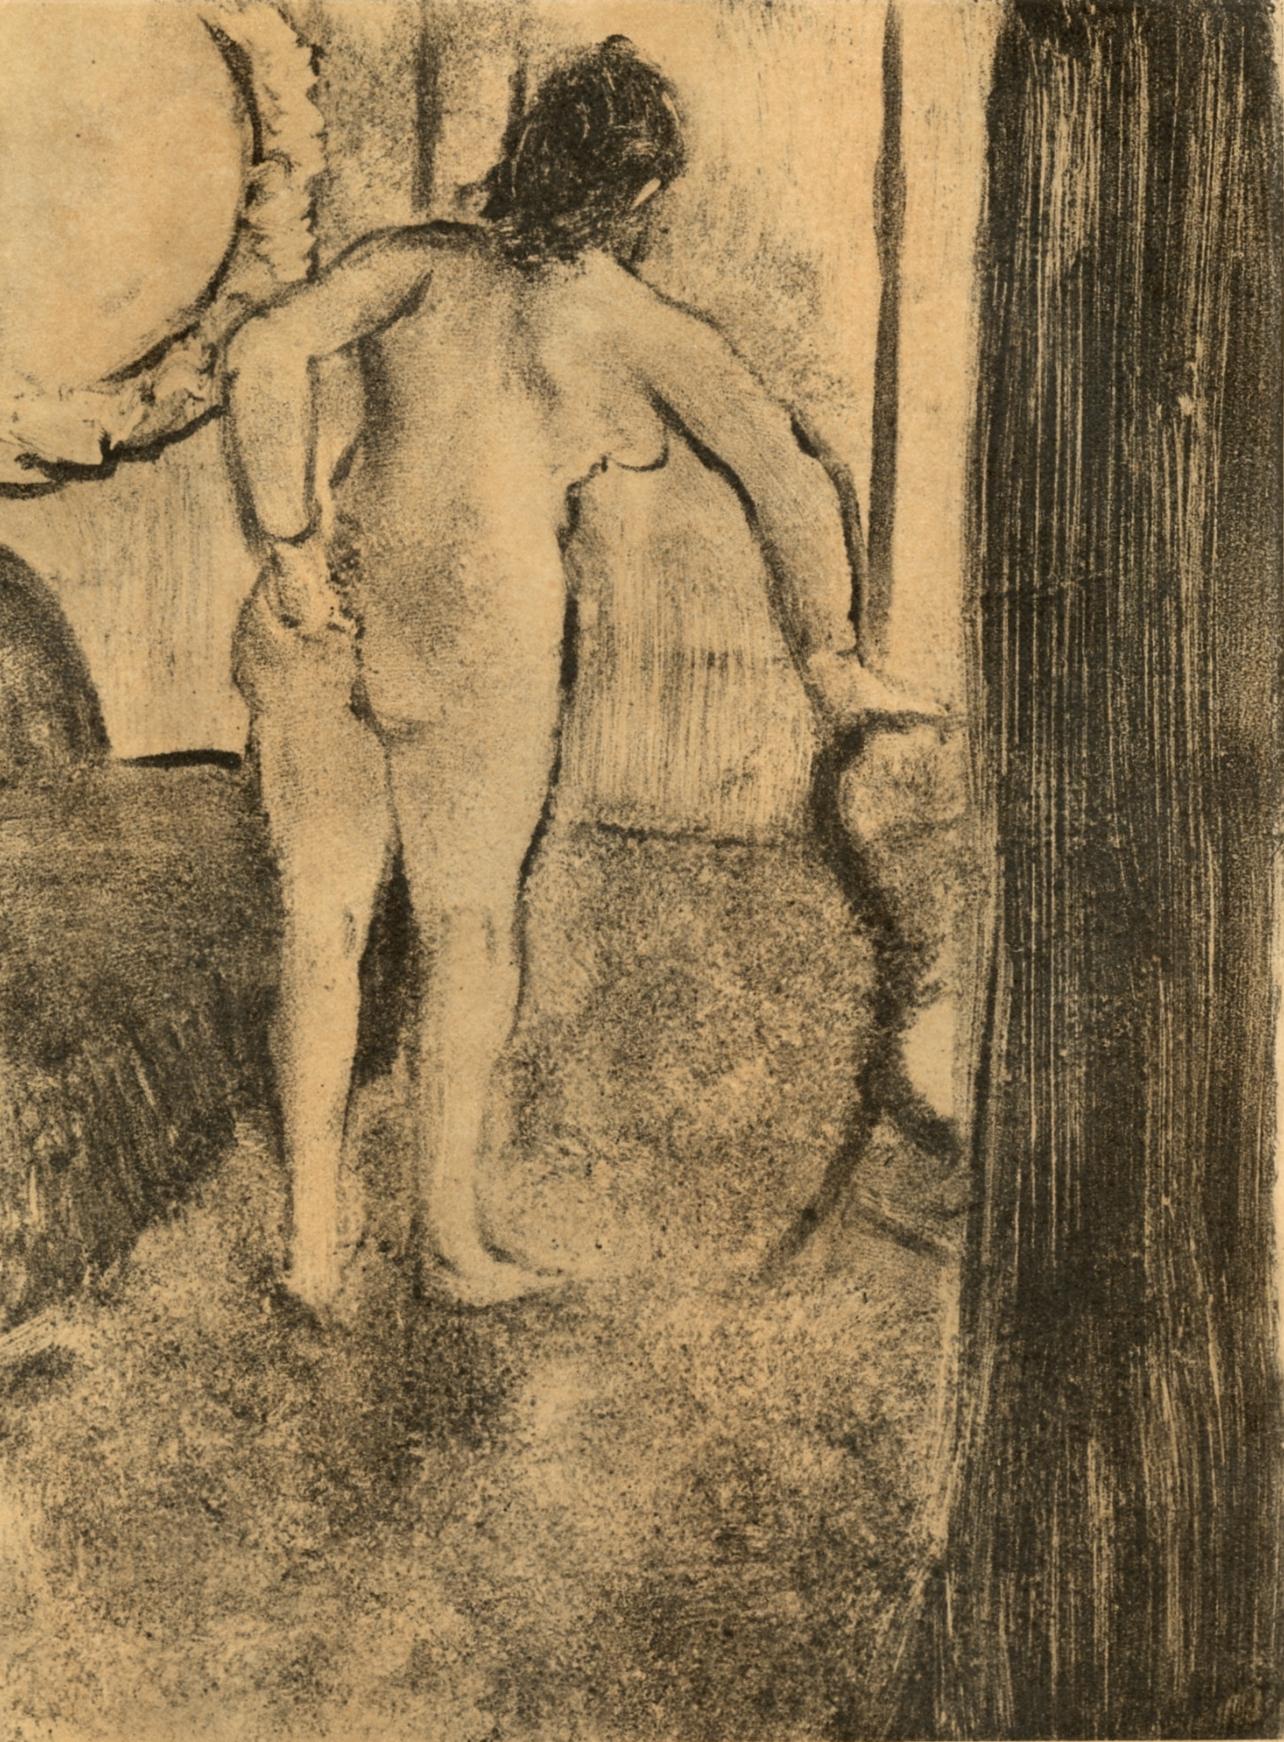 Degas, Nu debout, Les Monotypes (after)